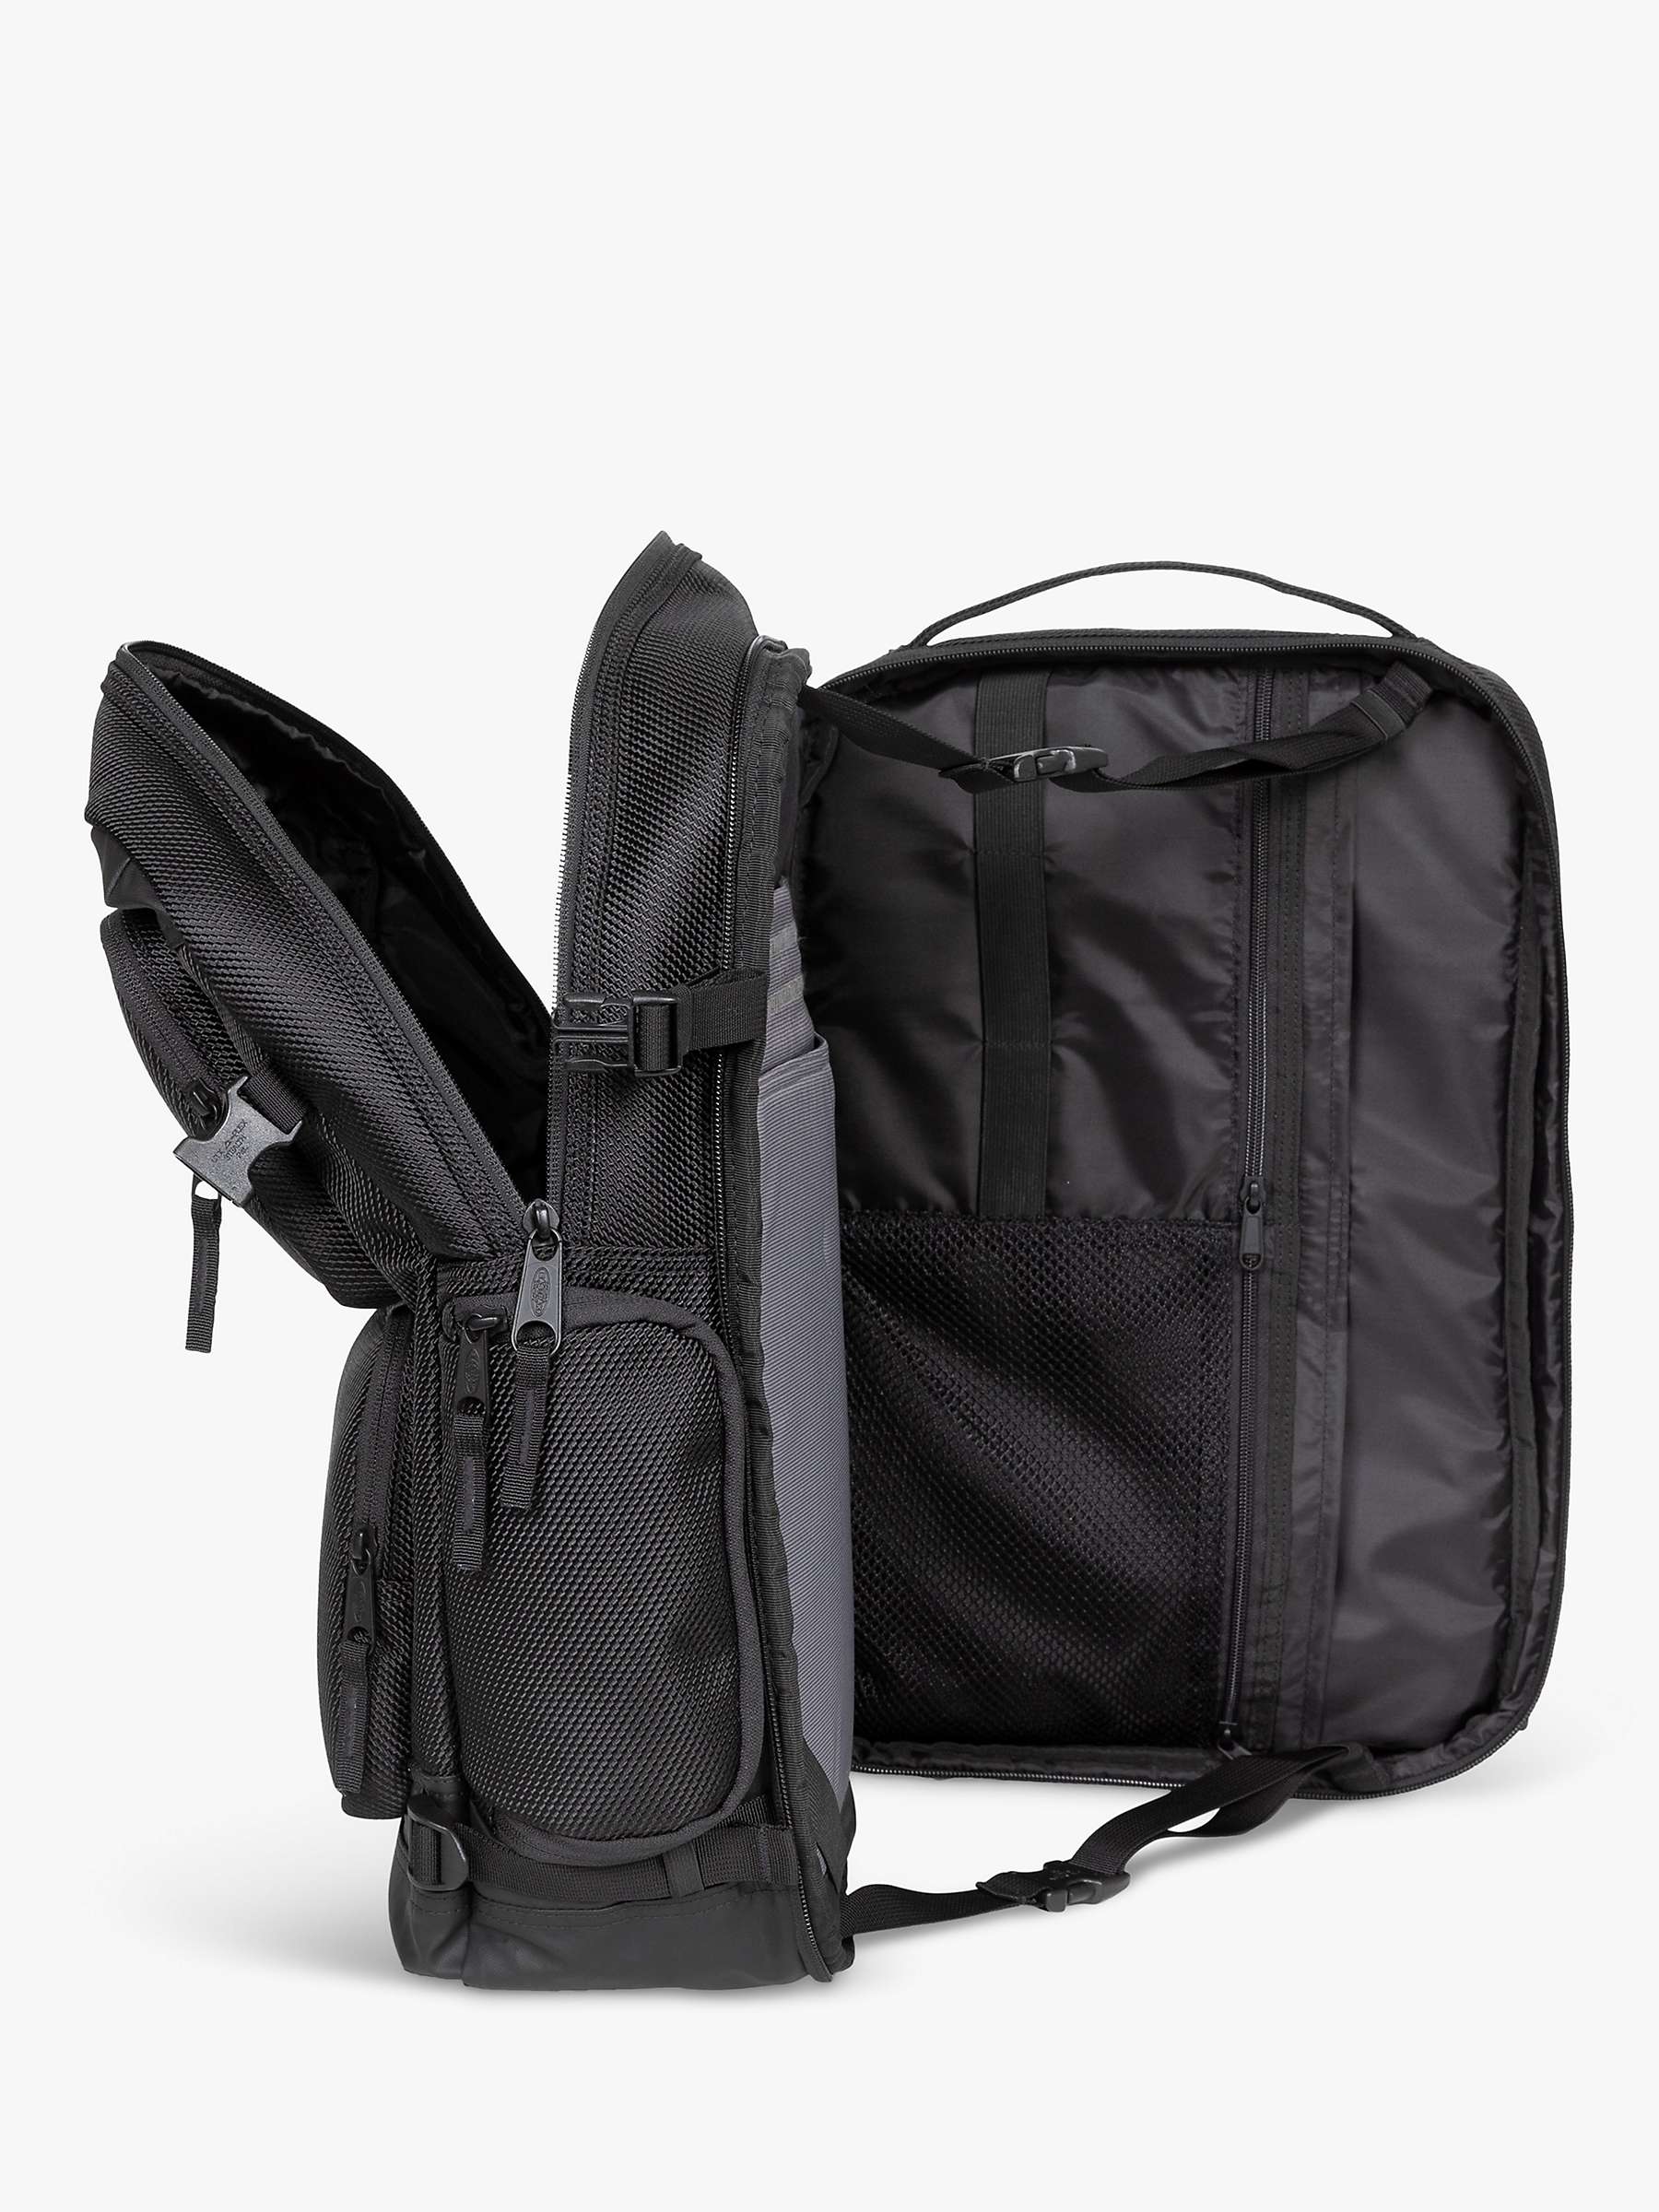 Eastpak Cnnct Office Backpack, Cnnct Coat at John Lewis & Partners